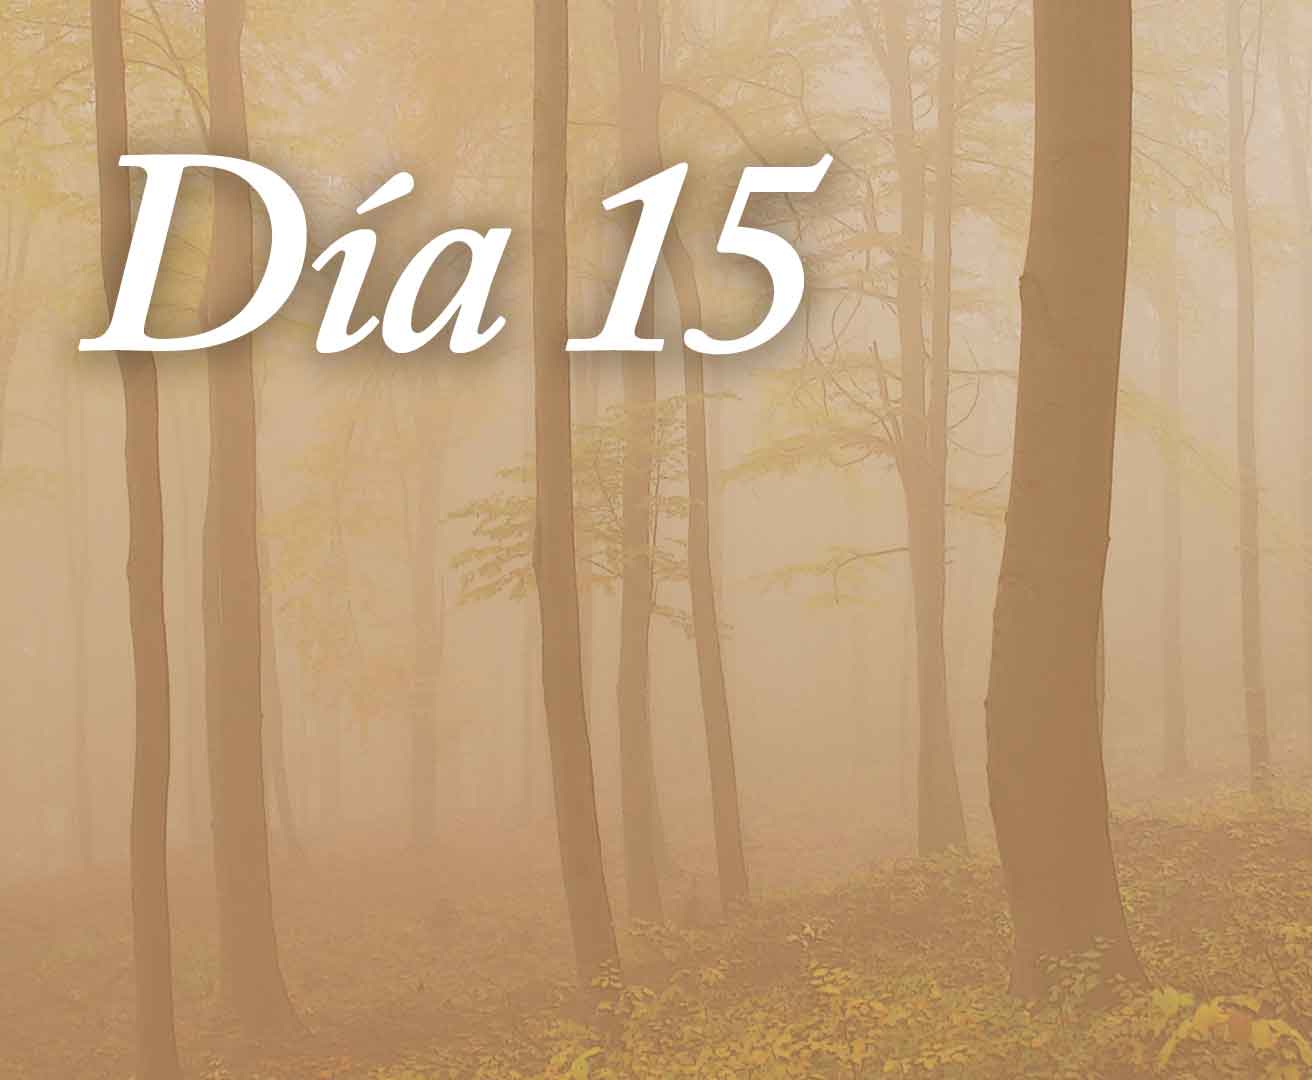 Día 15: En este silencio 